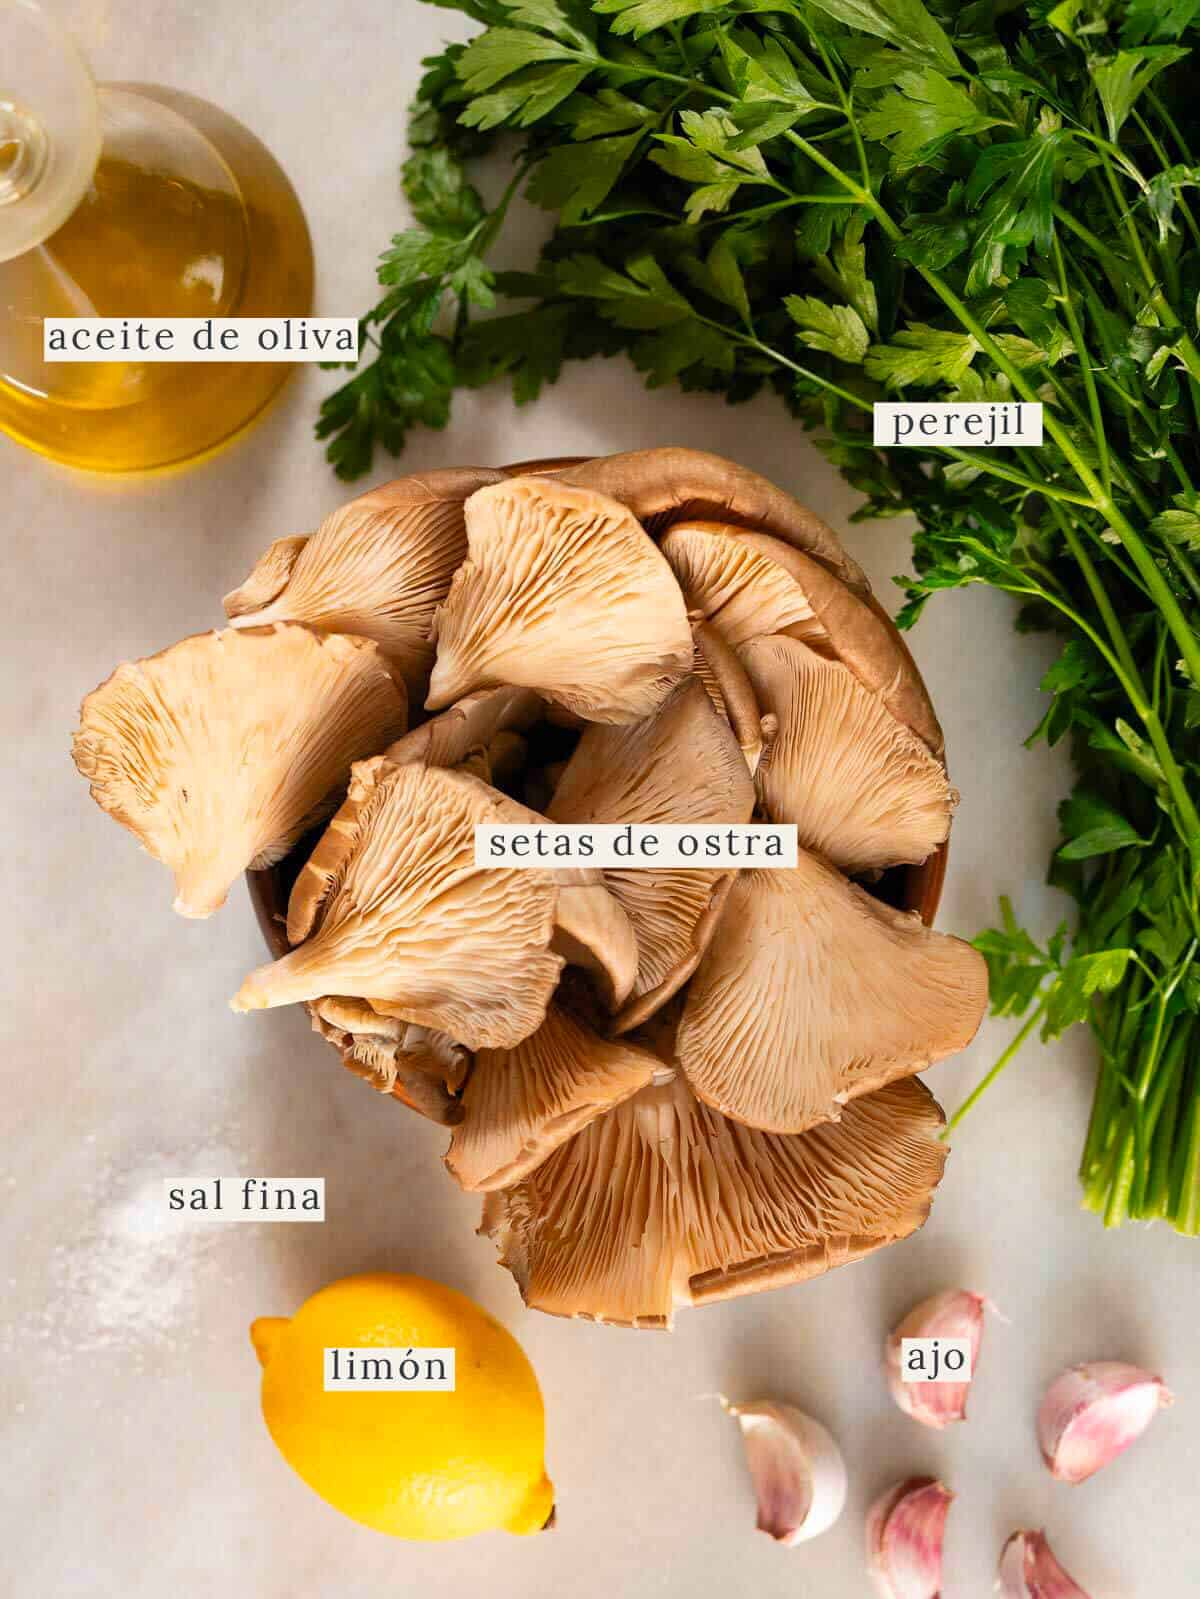 ingredientes para preparar setas ostra al ajillo.